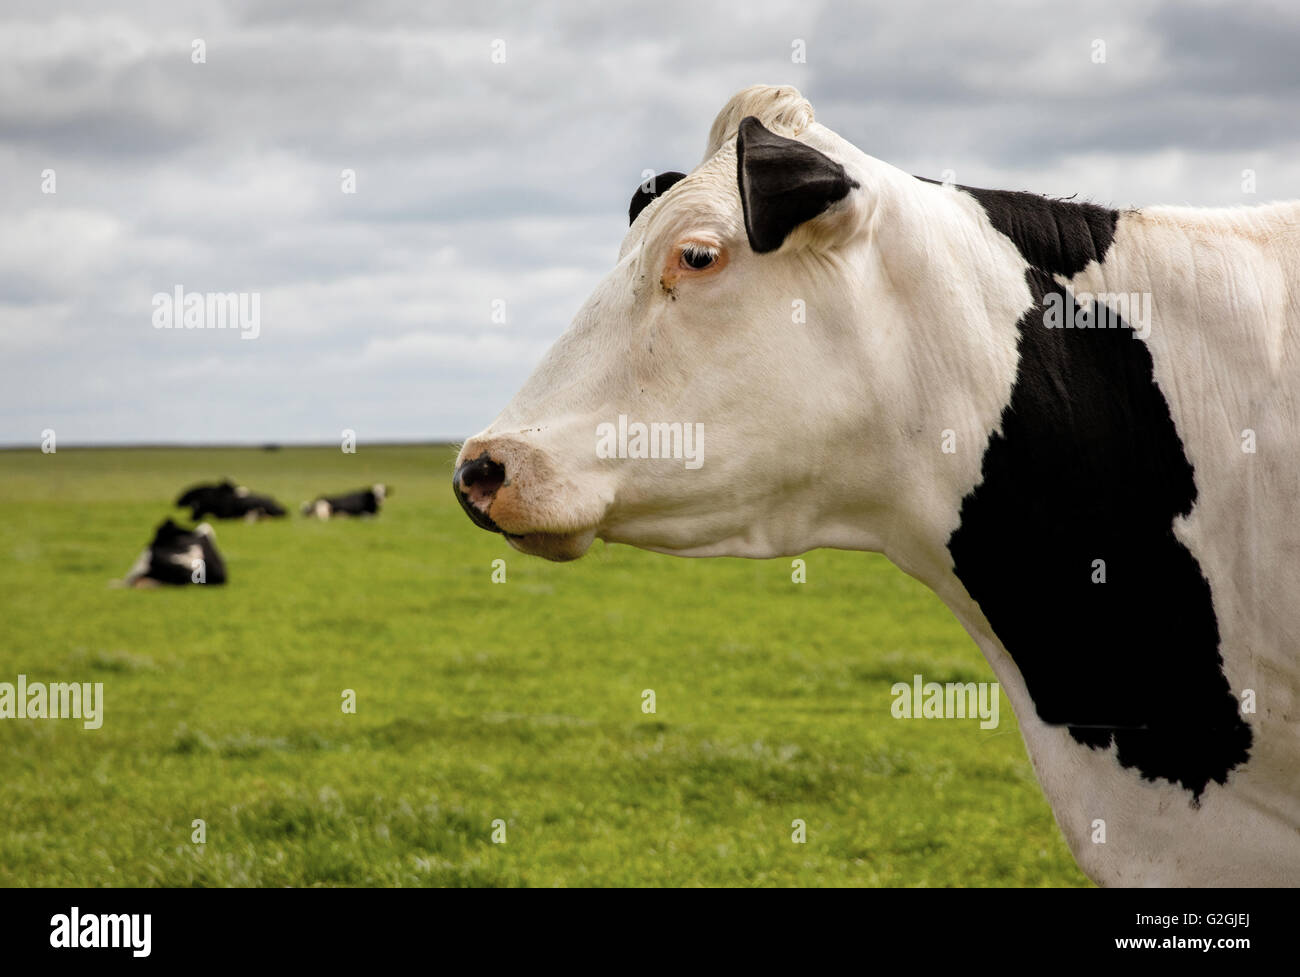 White face Fresian cow standing dans un champ avec des vaches à position allongée à l'arrière-plan sur une ferme Cotswold UK Banque D'Images